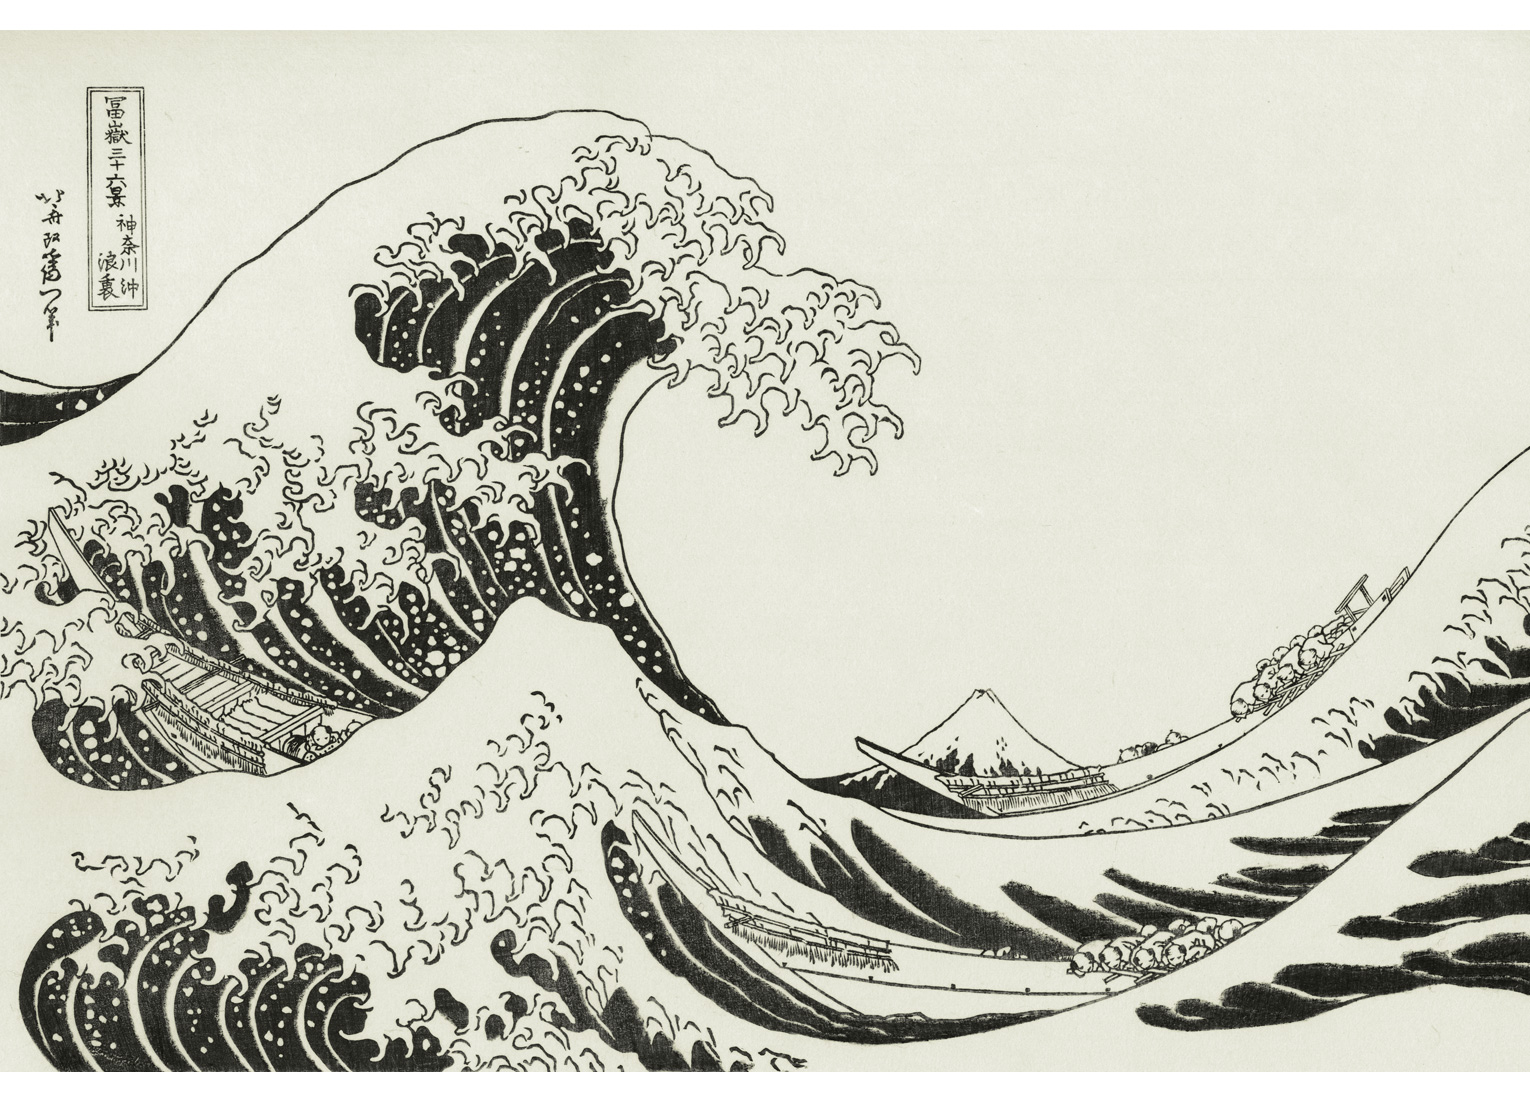 アダチ版復刻浮世絵で楽しむ “The Great Wave” 江戸の人々を魅力した 